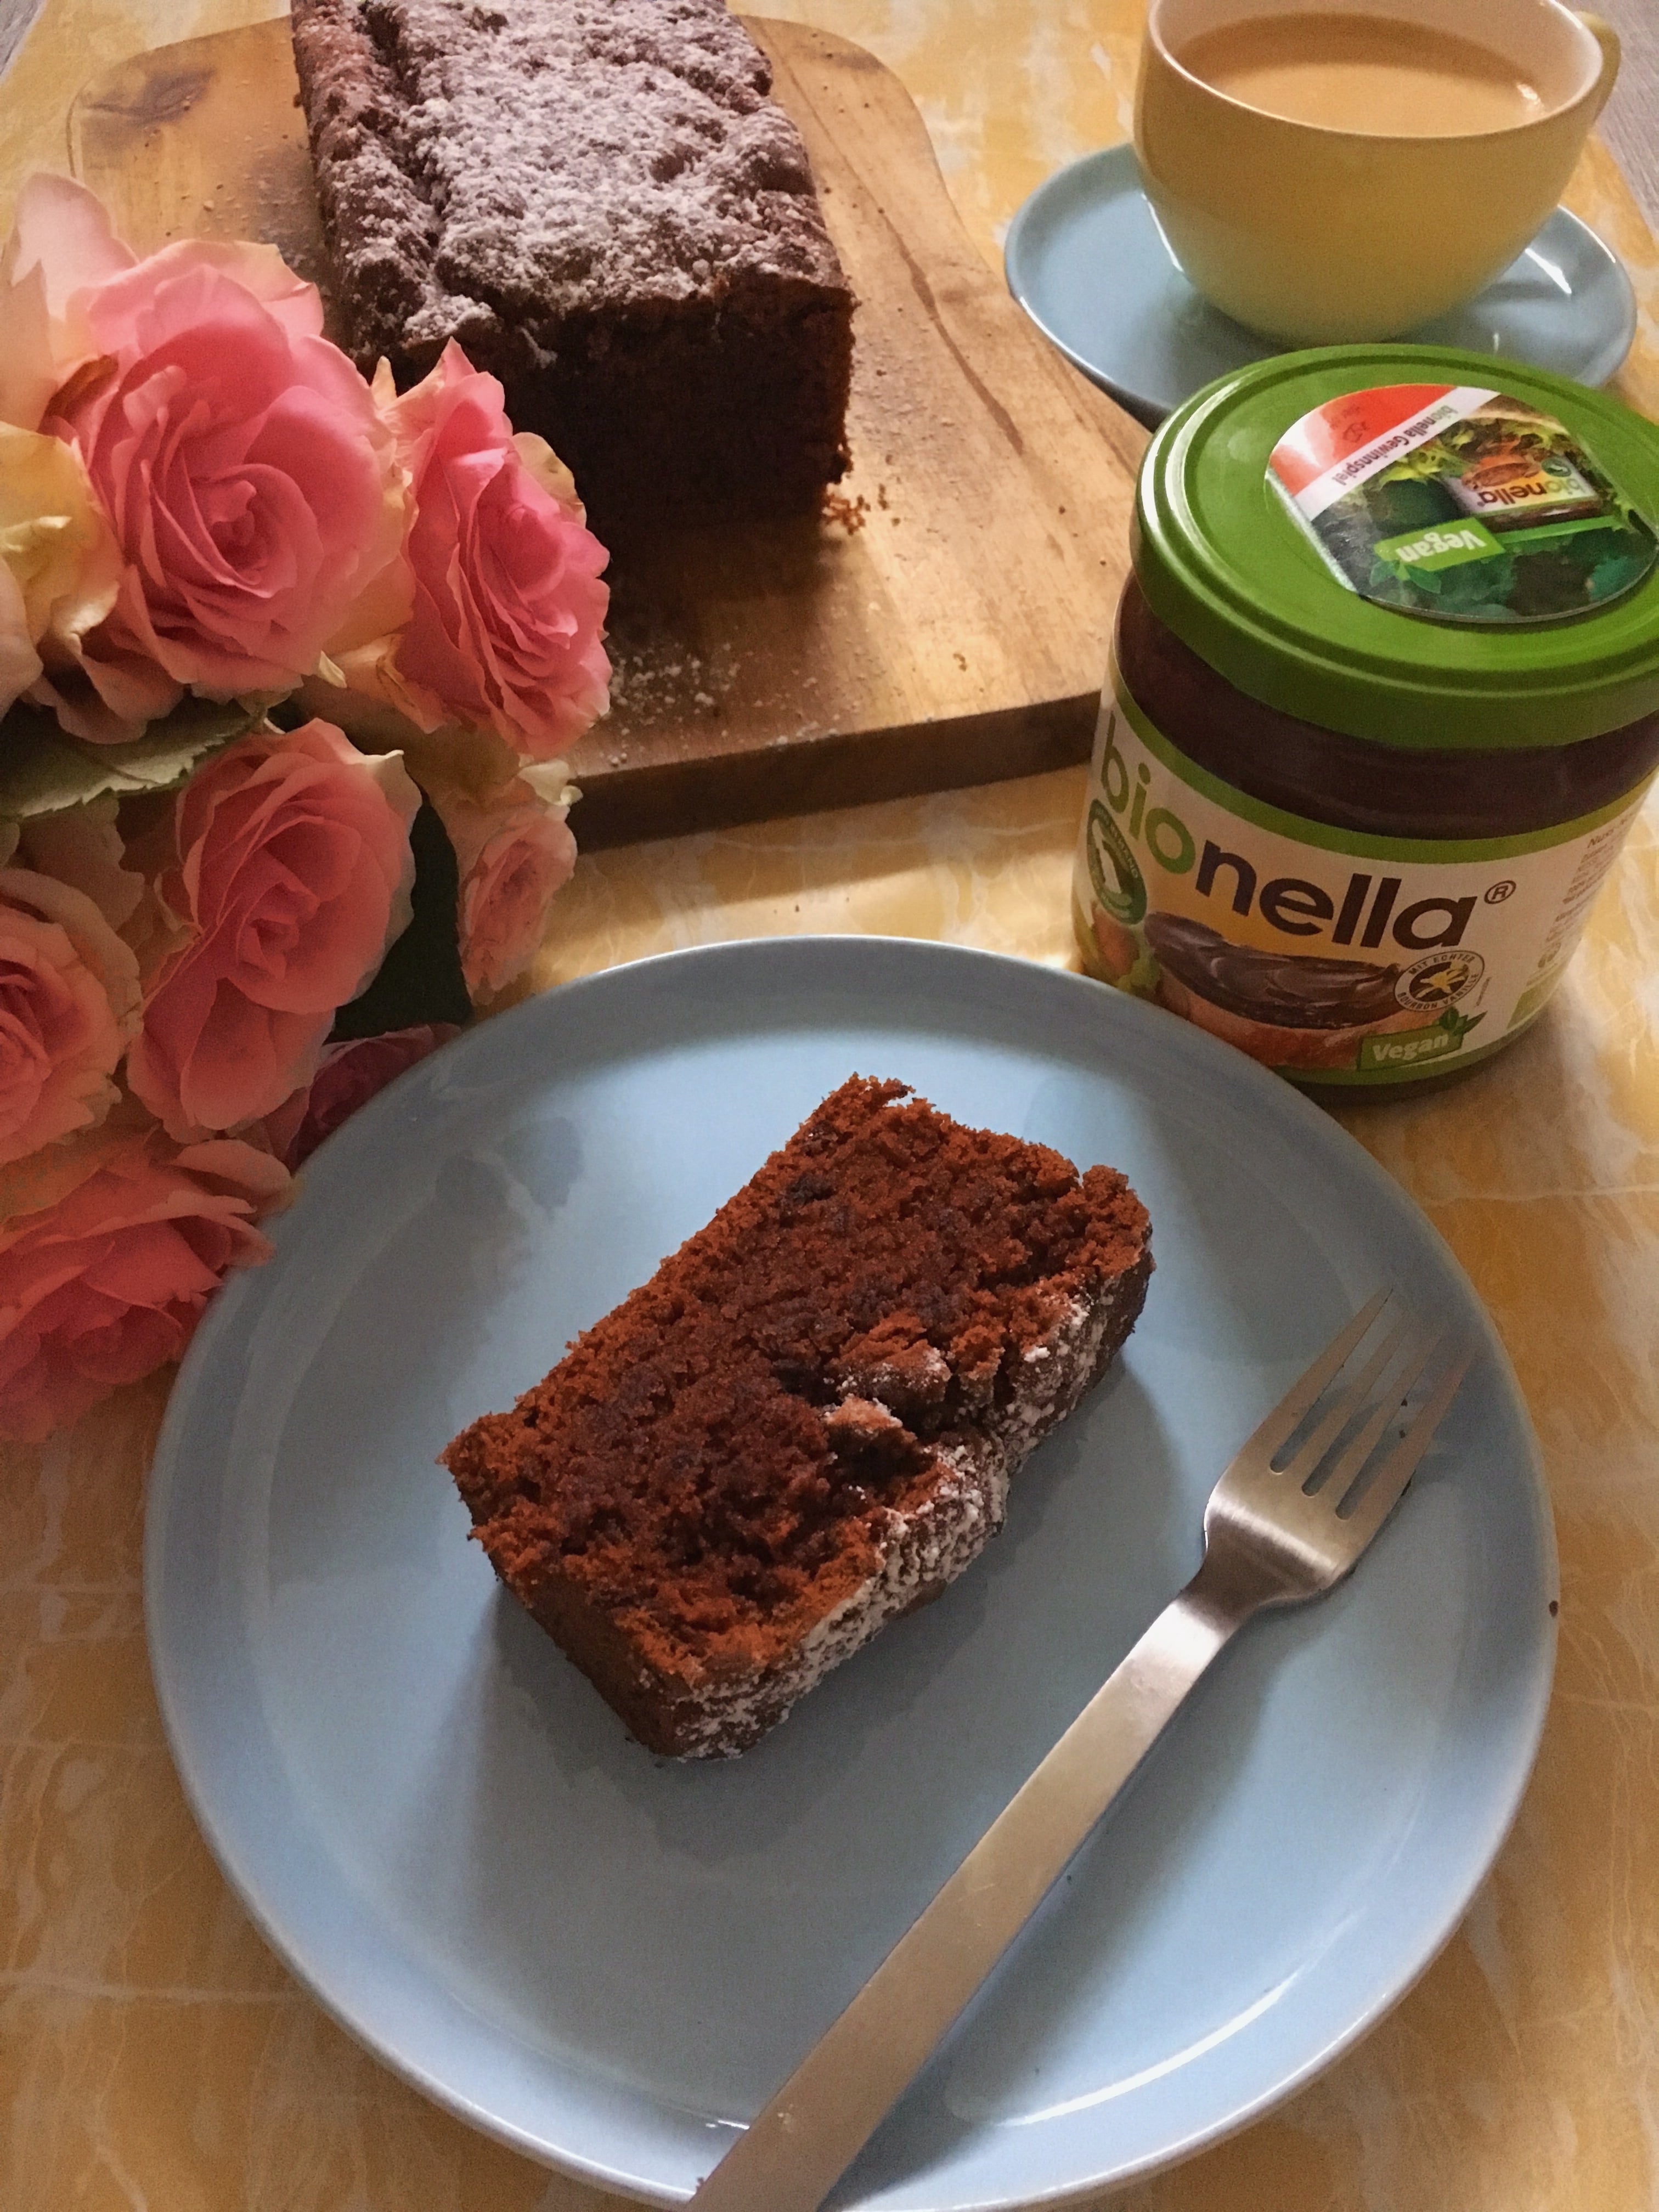 Heute könnt ihr auf dem Blog ein Rezept für einen veganen bionella Schoko-Kuchen entdecken und den saftigen Kuchen aus der Kastenform im Handumdrehen backen